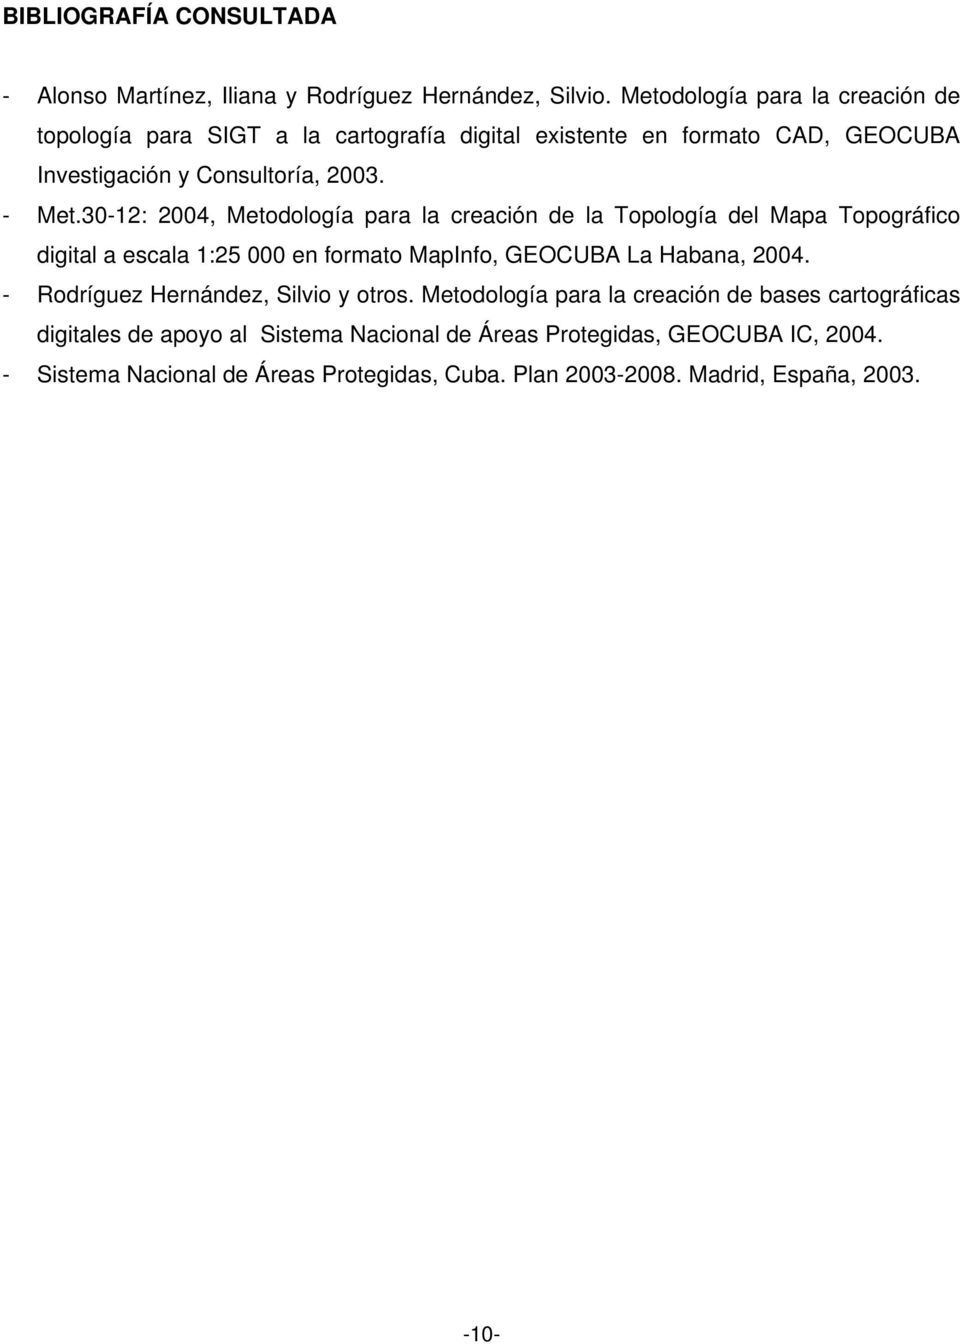 30-12: 2004, Metodología para la creación de la Topología del Mapa Topográfico digital a escala 1:25 000 en formato MapInfo, GEOCUBA La Habana, 2004.